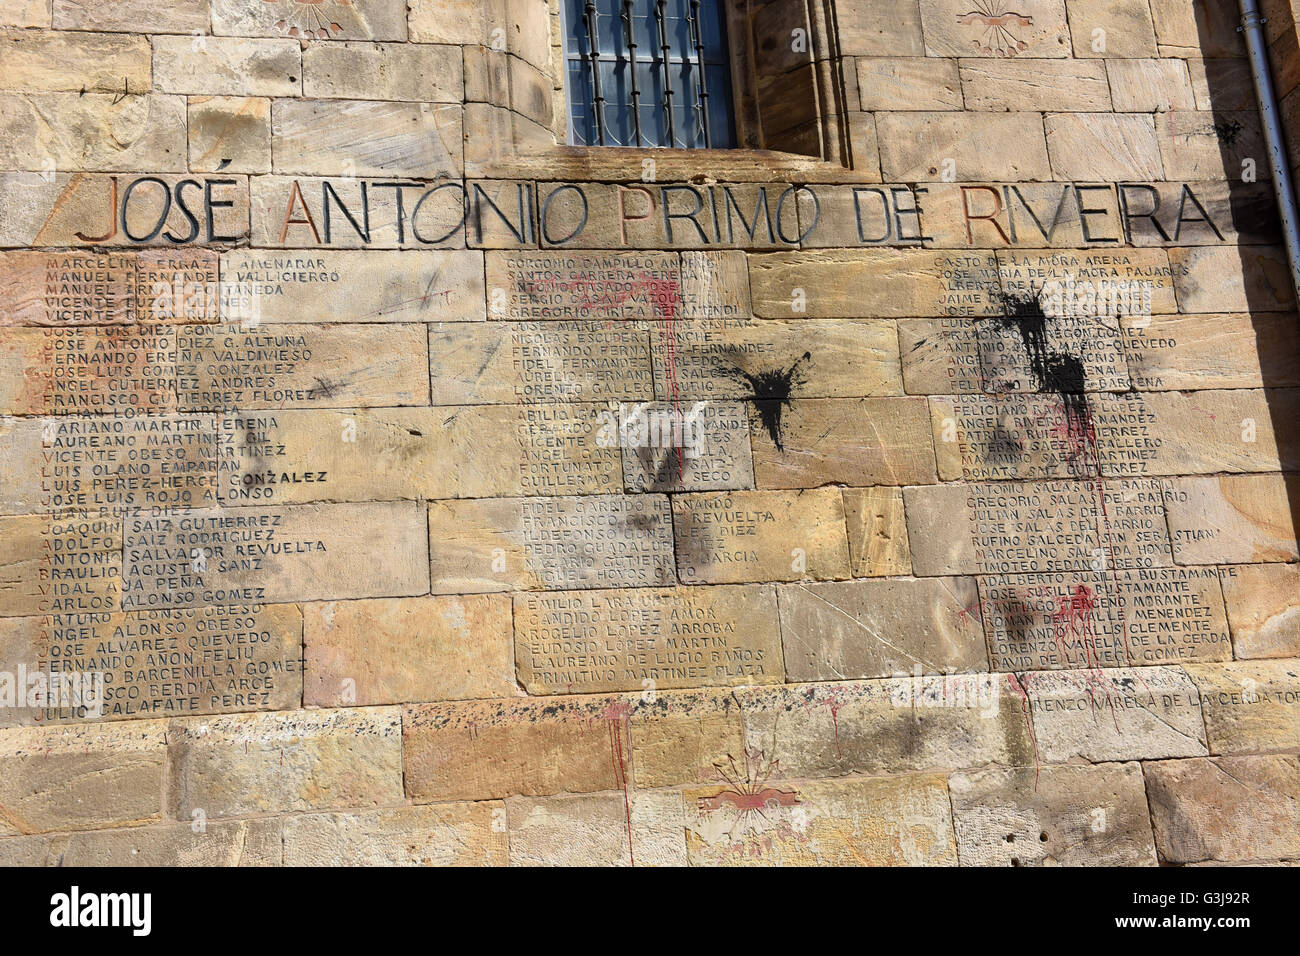 Liste de la tombée de la guerre civile espagnole sur Memorial church à Reinosa en Cantabrie, Espagne Banque D'Images